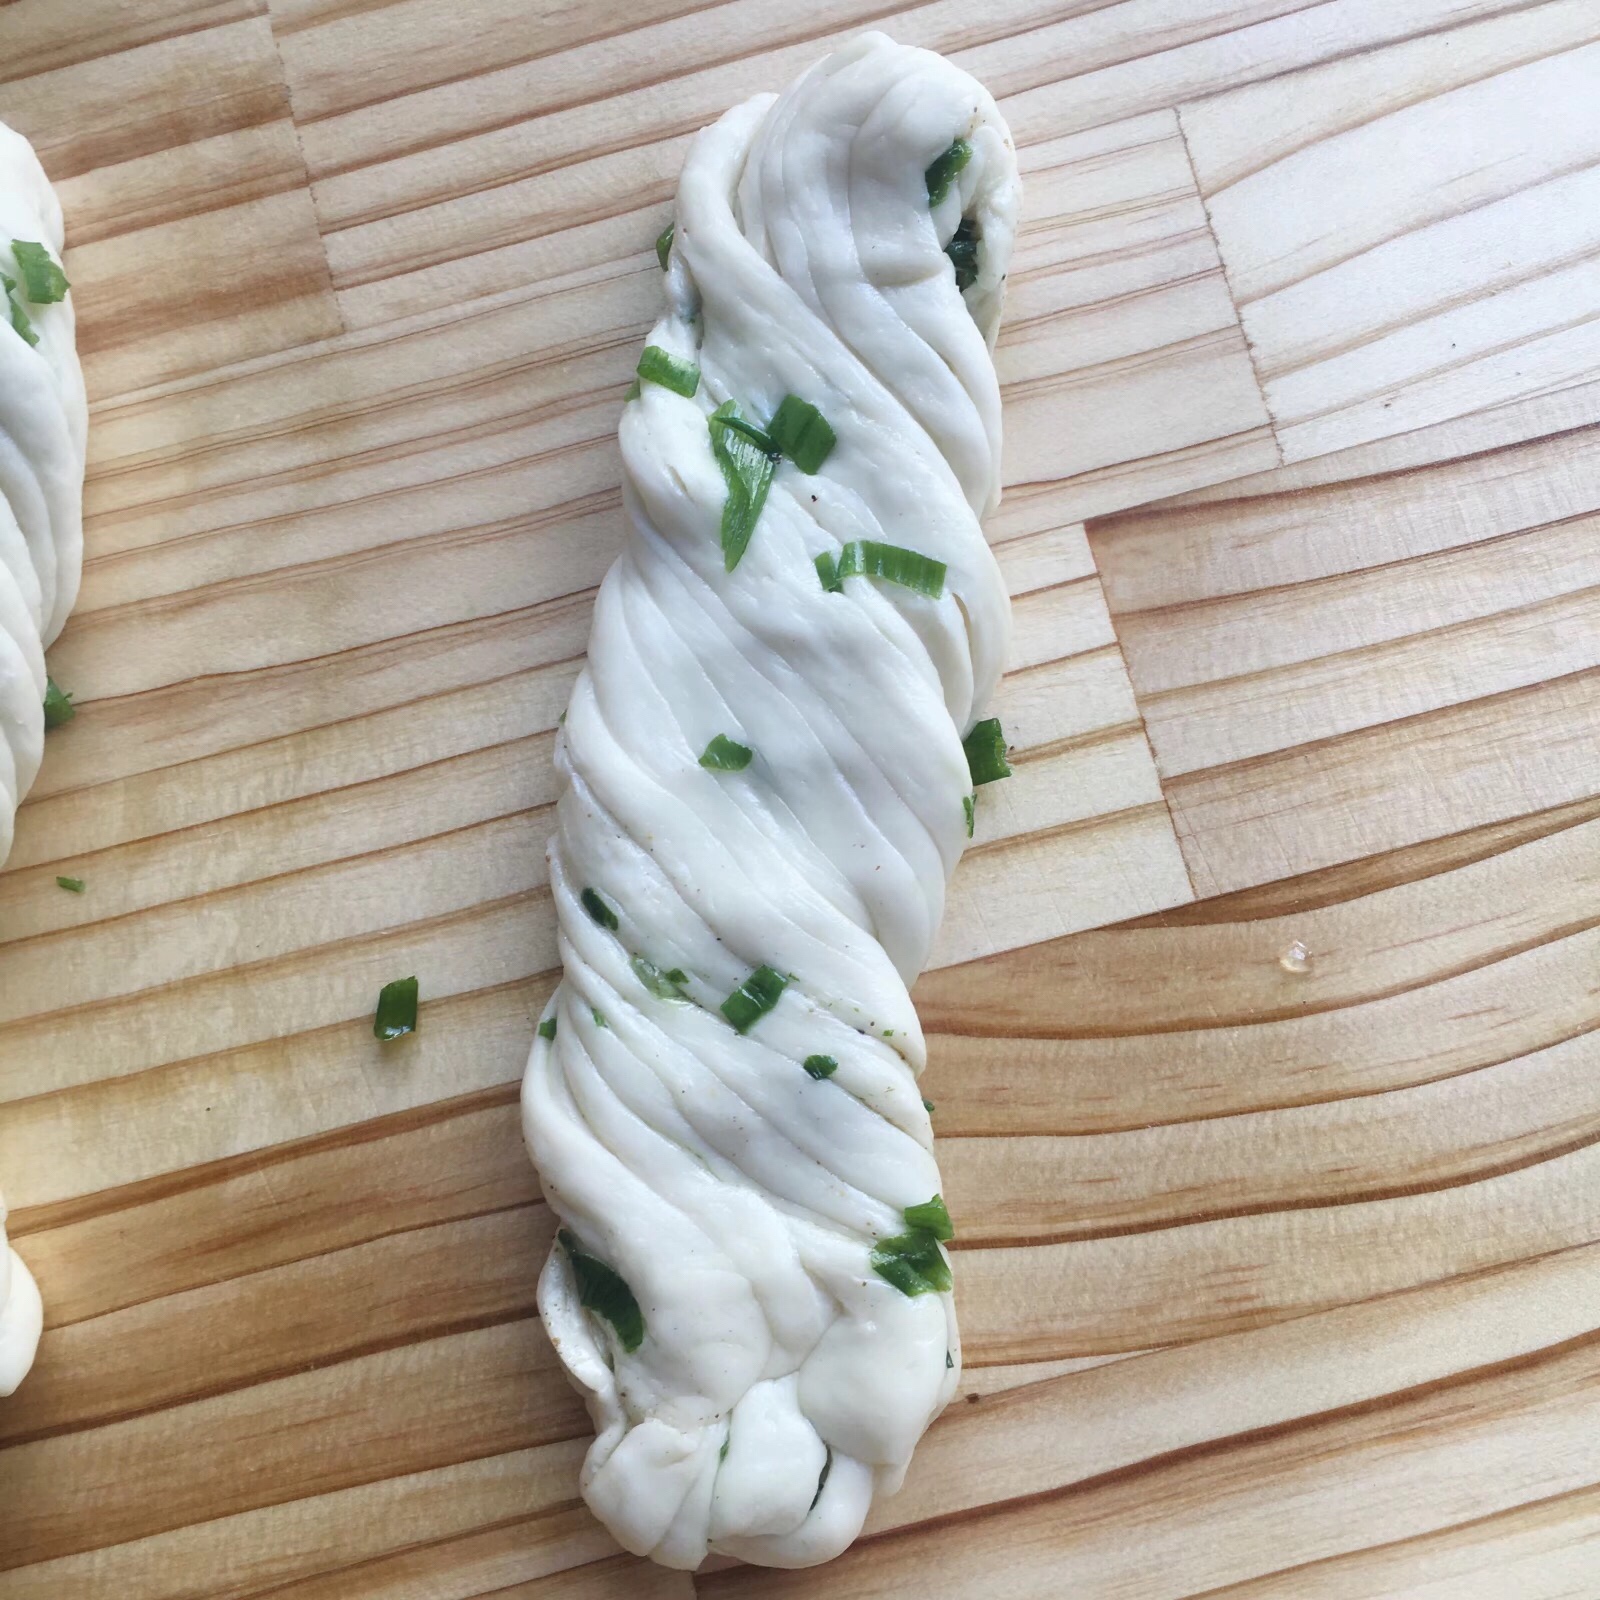 烙的花卷—葱油花卷烧饼的做法 步骤10